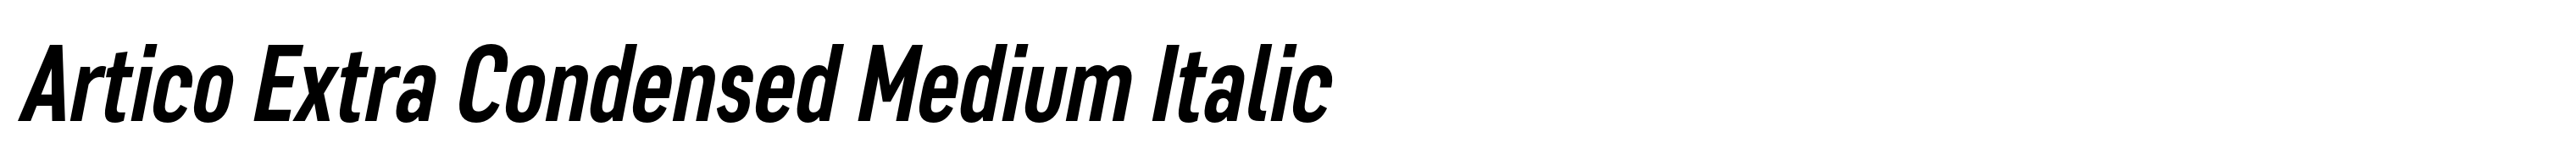 Artico Extra Condensed Medium Italic